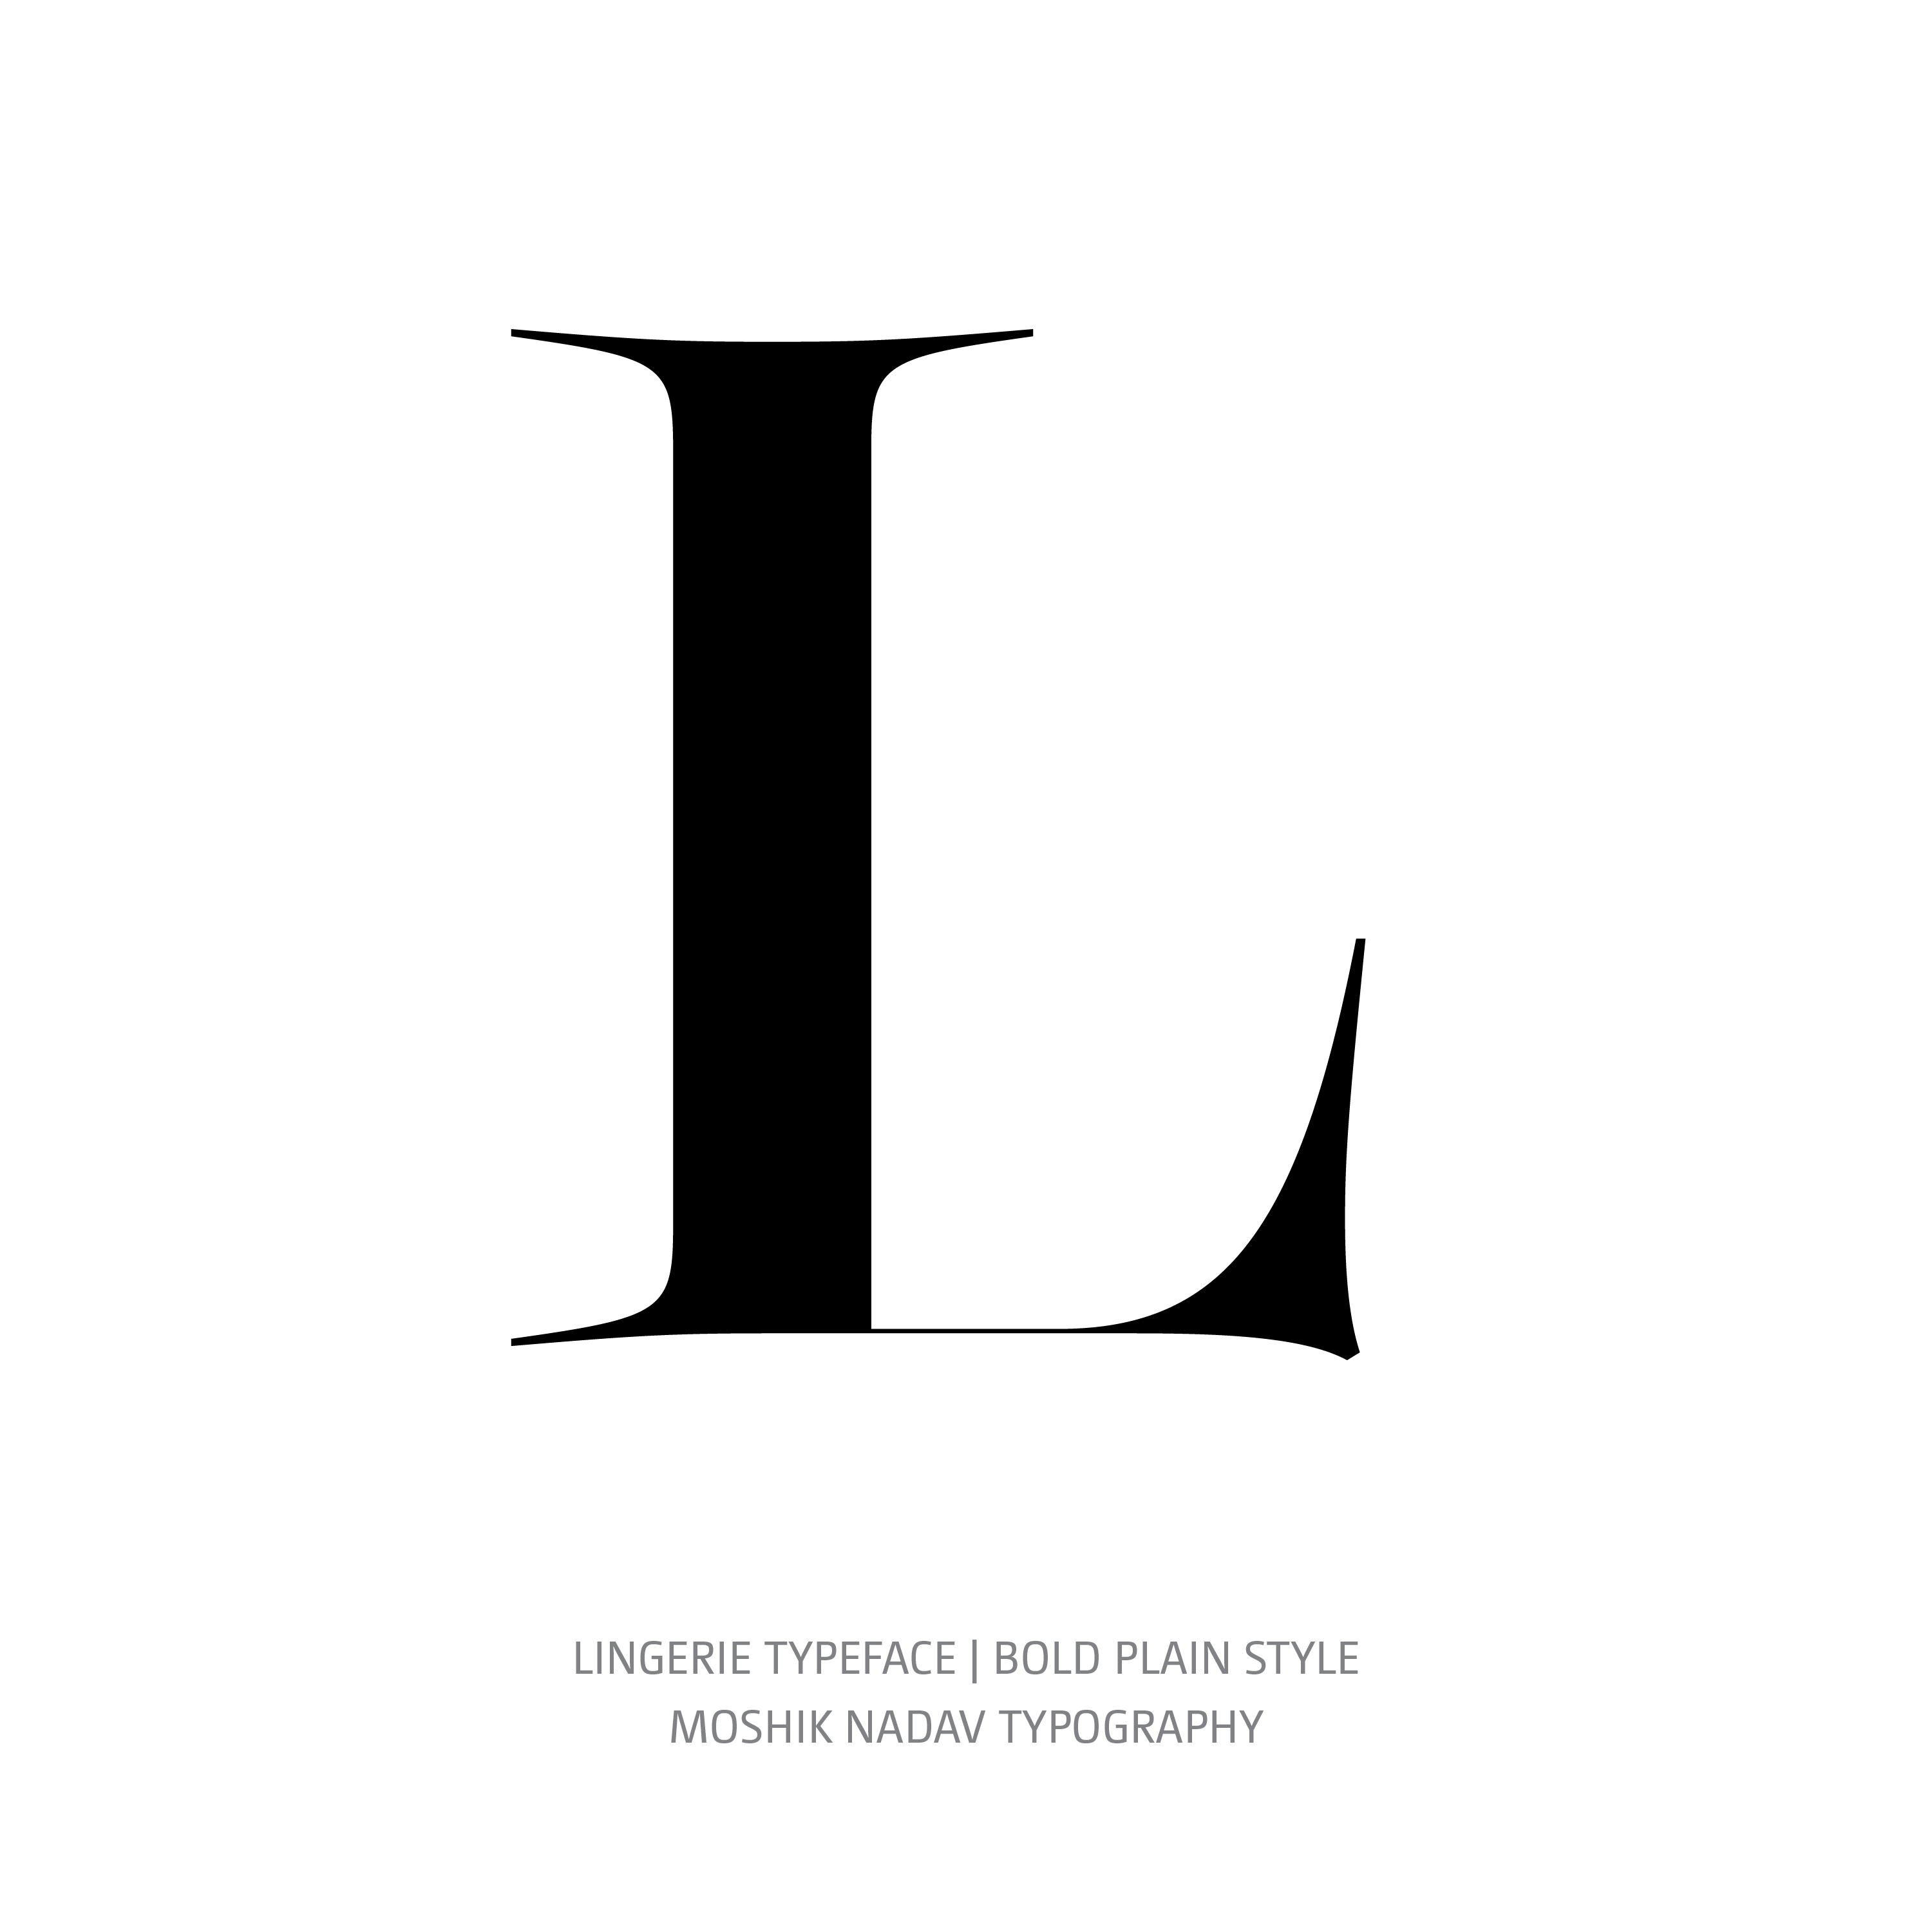 Lingerie Typeface Bold Plain L